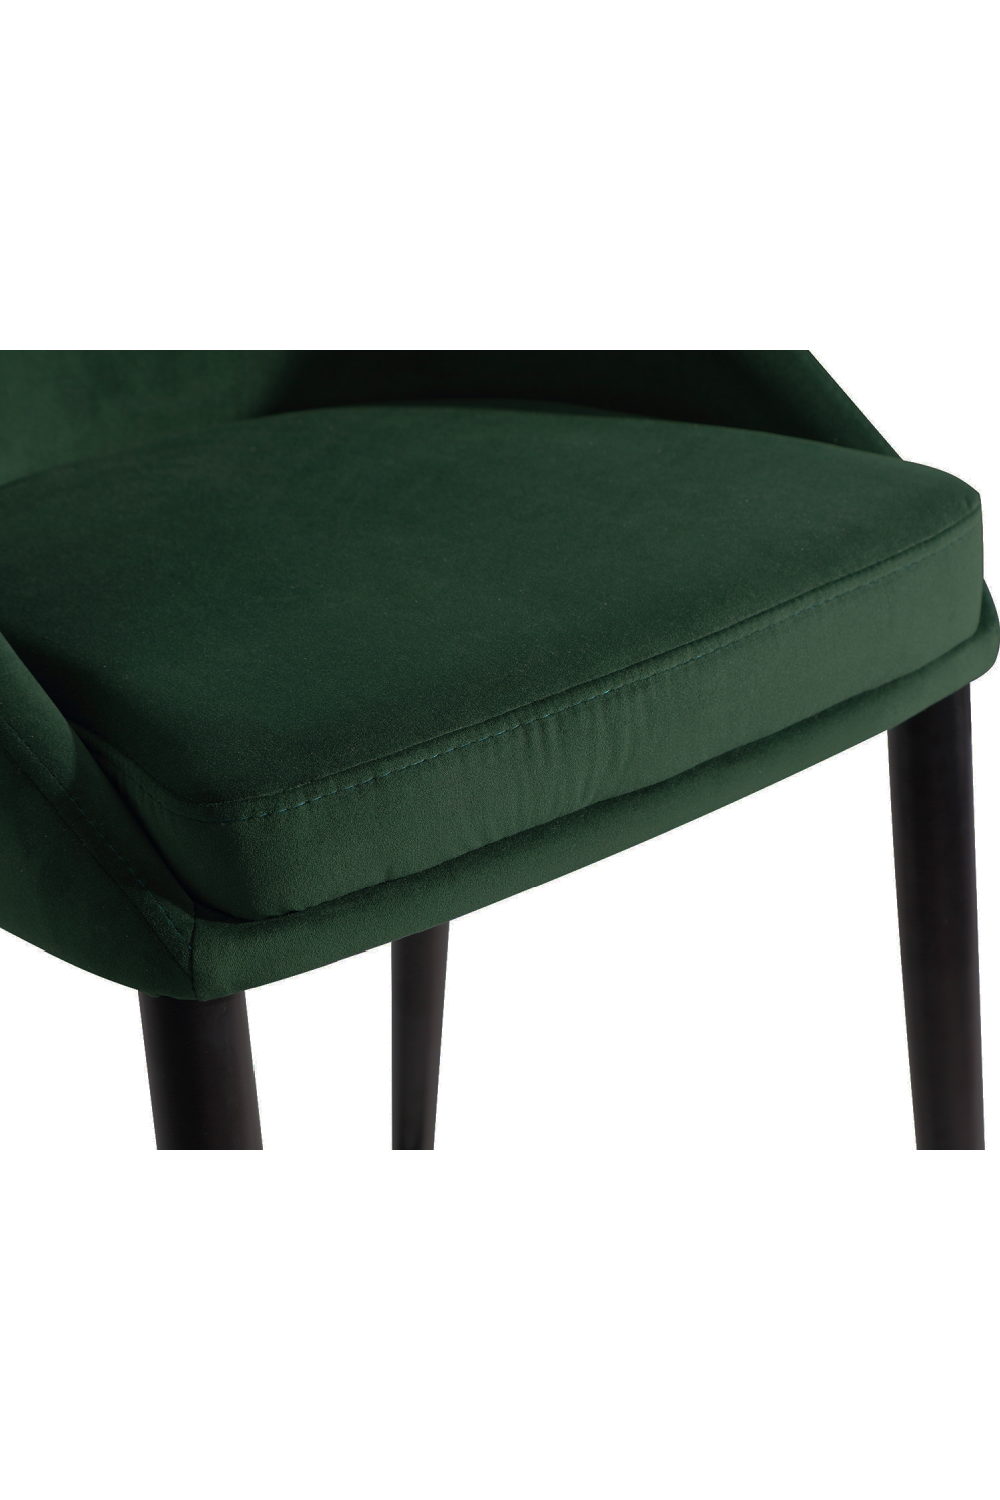 Emerald Green Velvet Barstool | Liang & Eimil Arden | Oroa.com